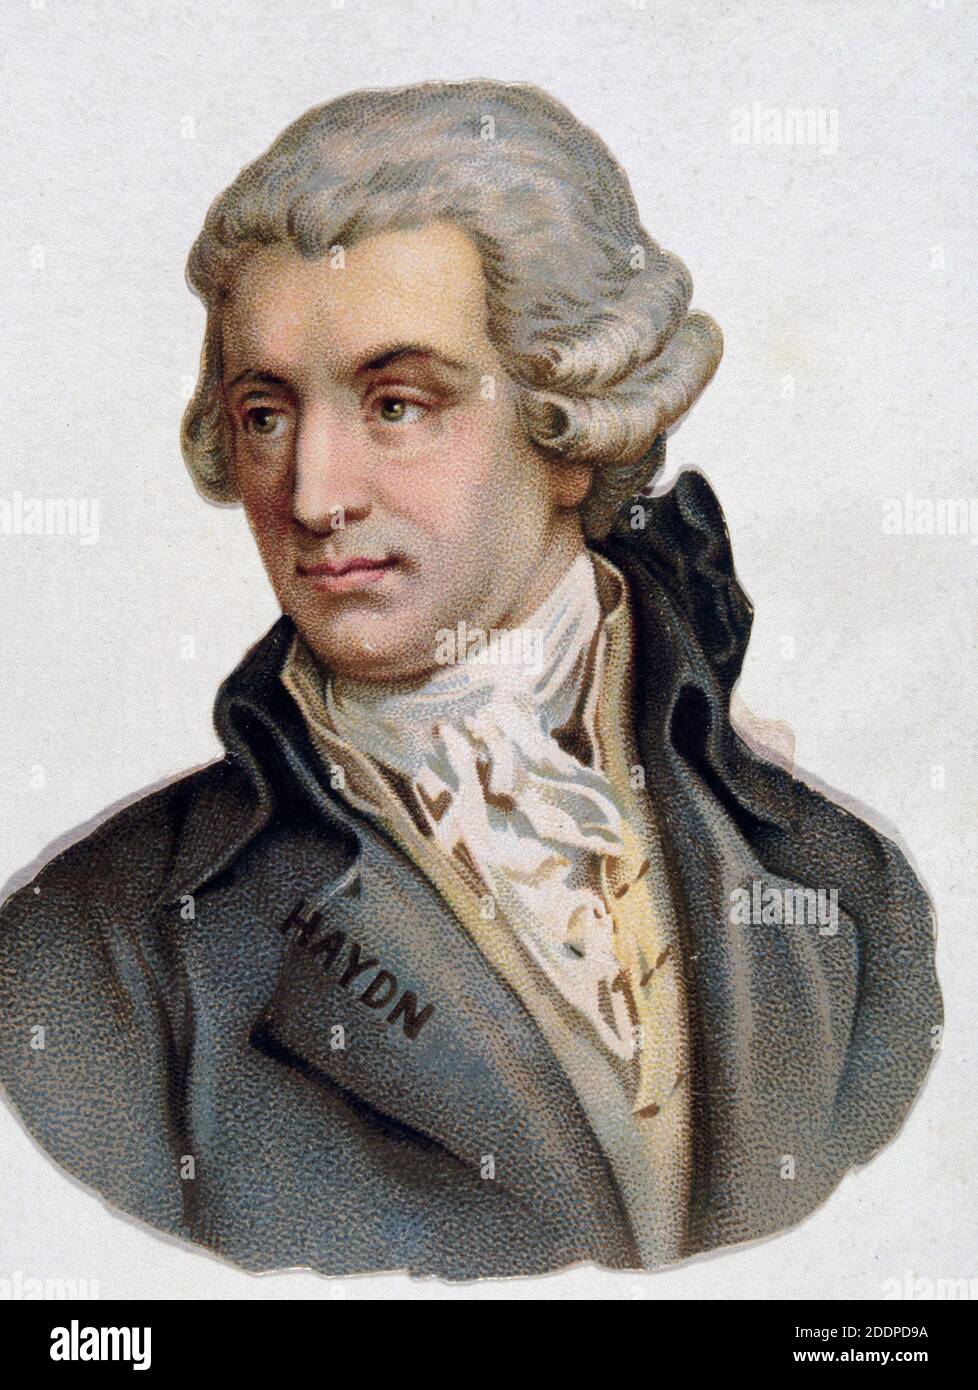 HAYDN, JOSEPH. COMPOSITEUR AUSTRIACO. 1732-1809 LITOGRAFIA. Banque D'Images